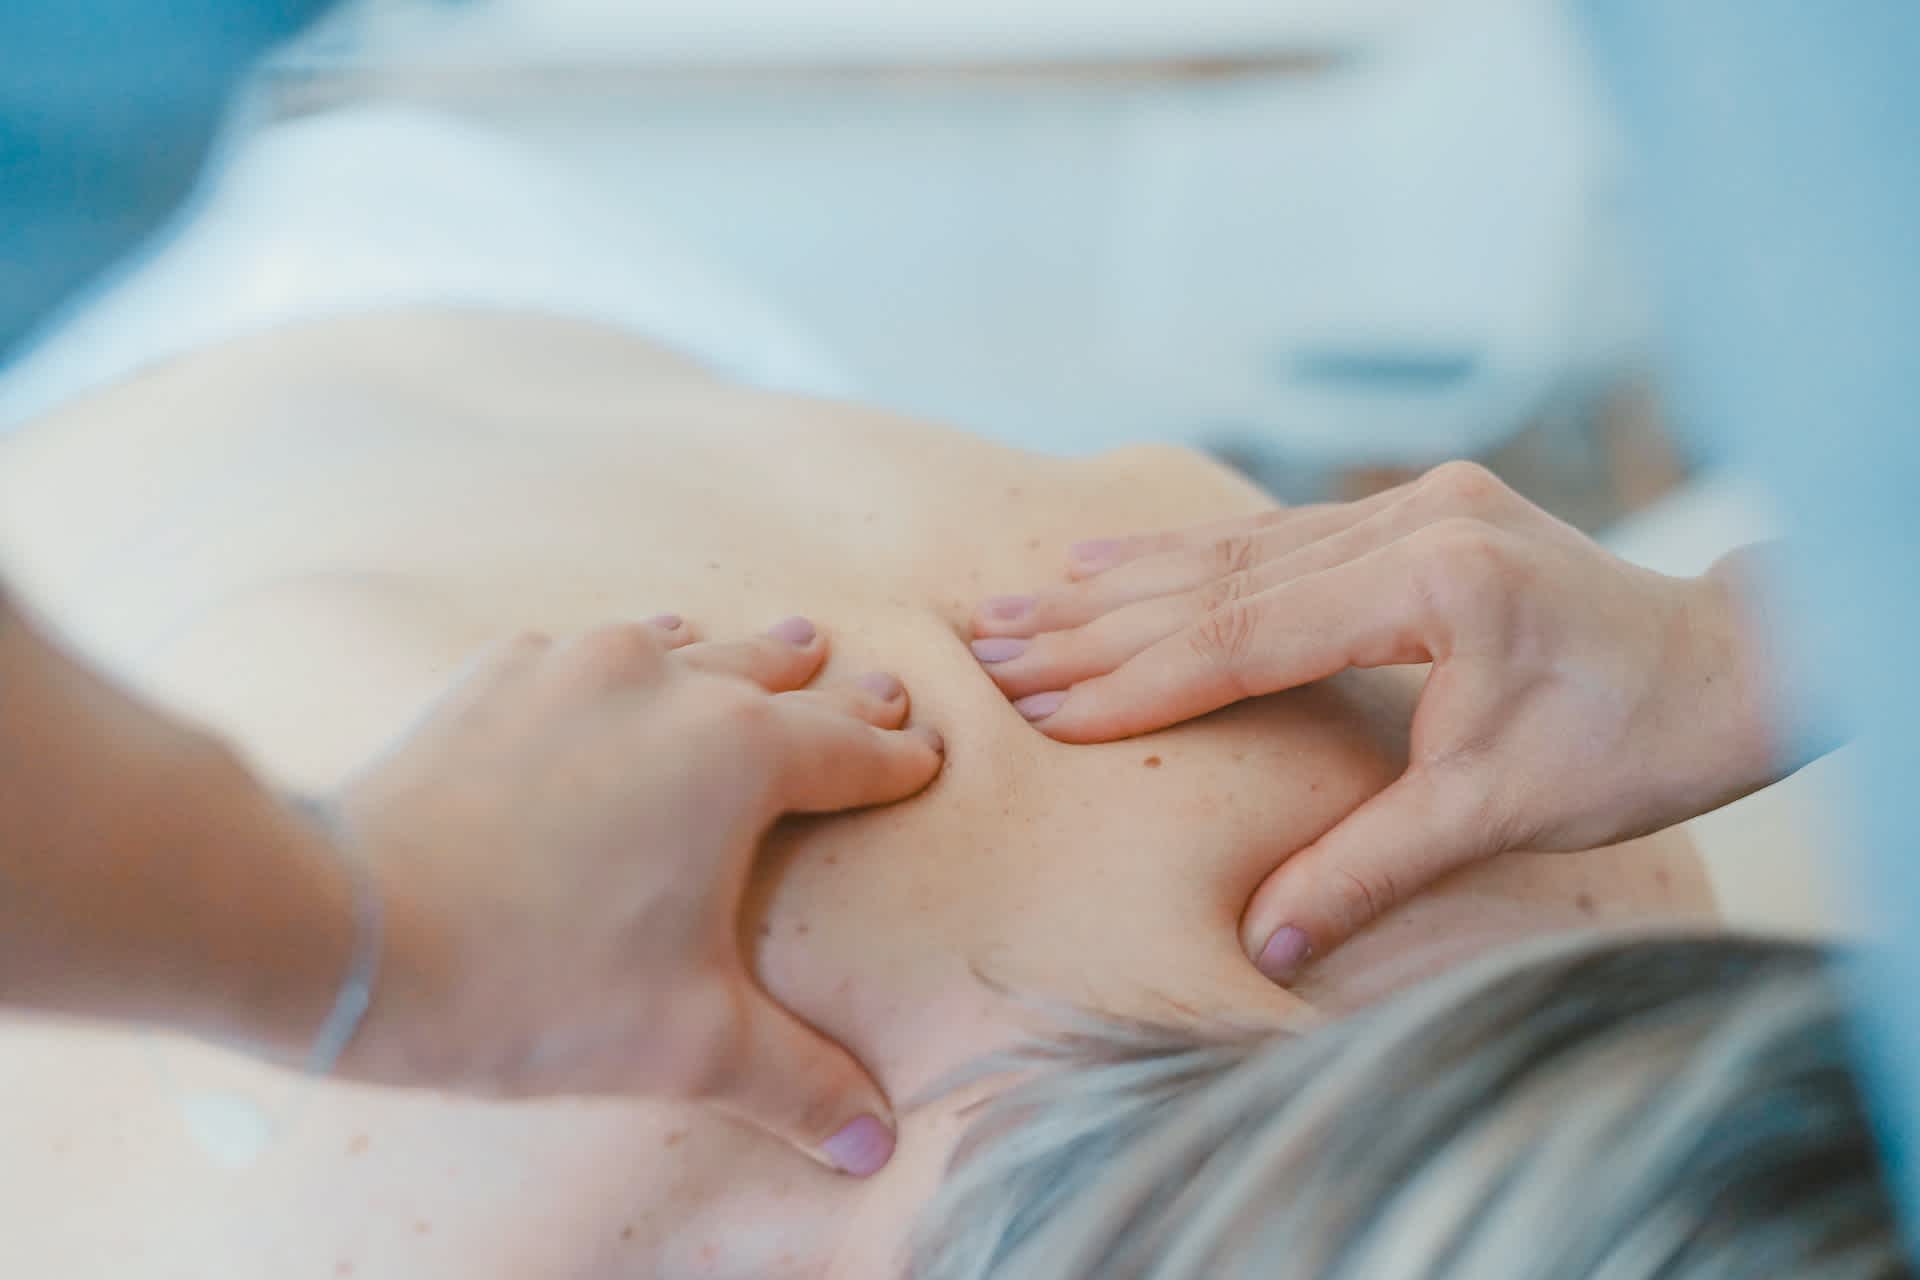 Sports Massage - Arm Massage - Physical Therapist Doing Massage Of